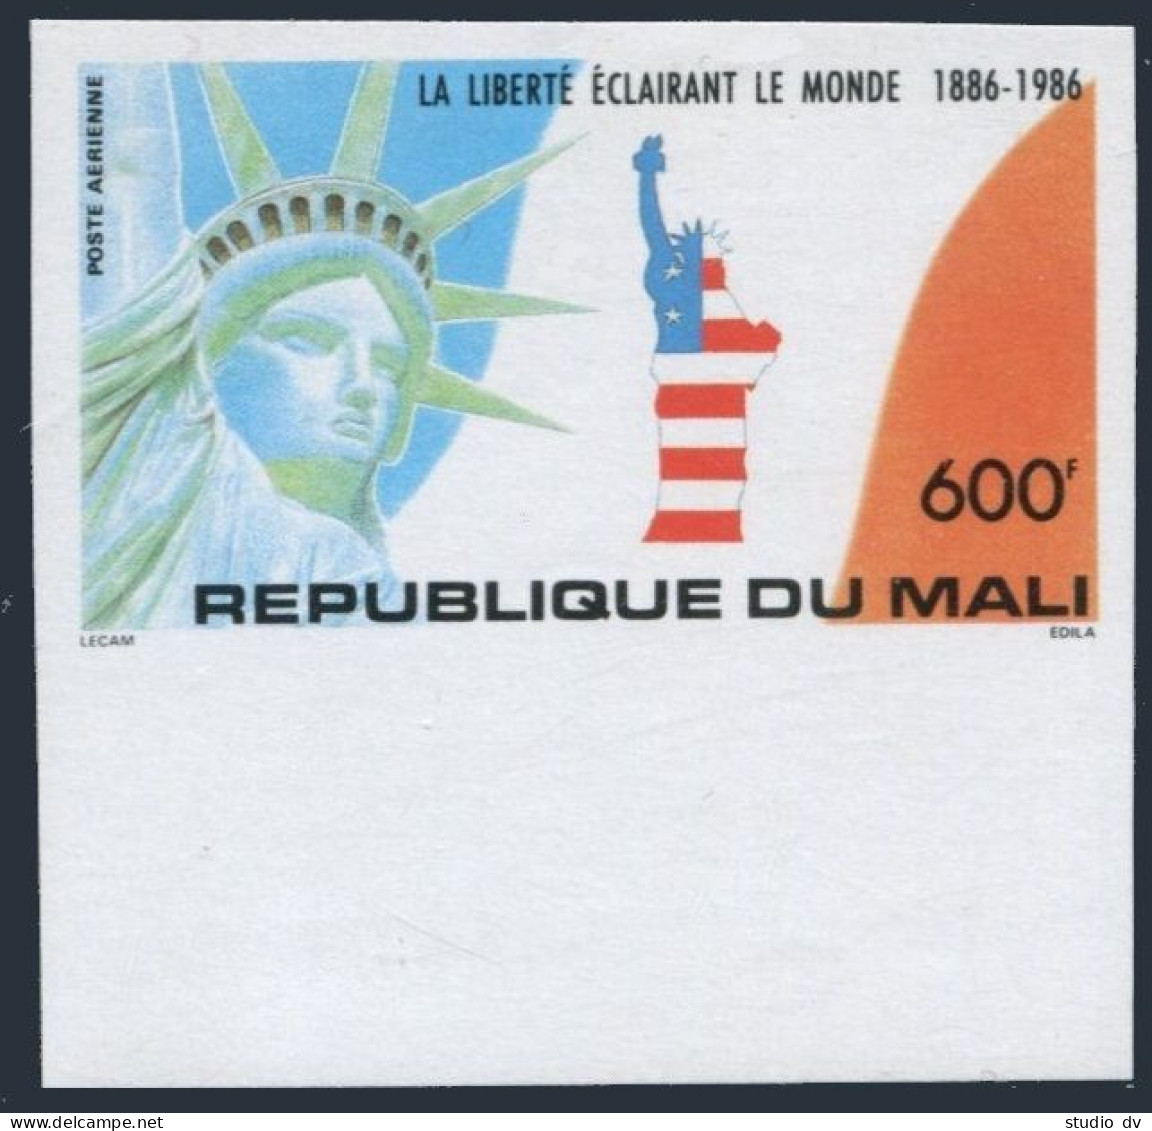 Mali C520 Imperf,MNH.Michel 1064B. Statue Of Liberty-100,1986. - Mali (1959-...)